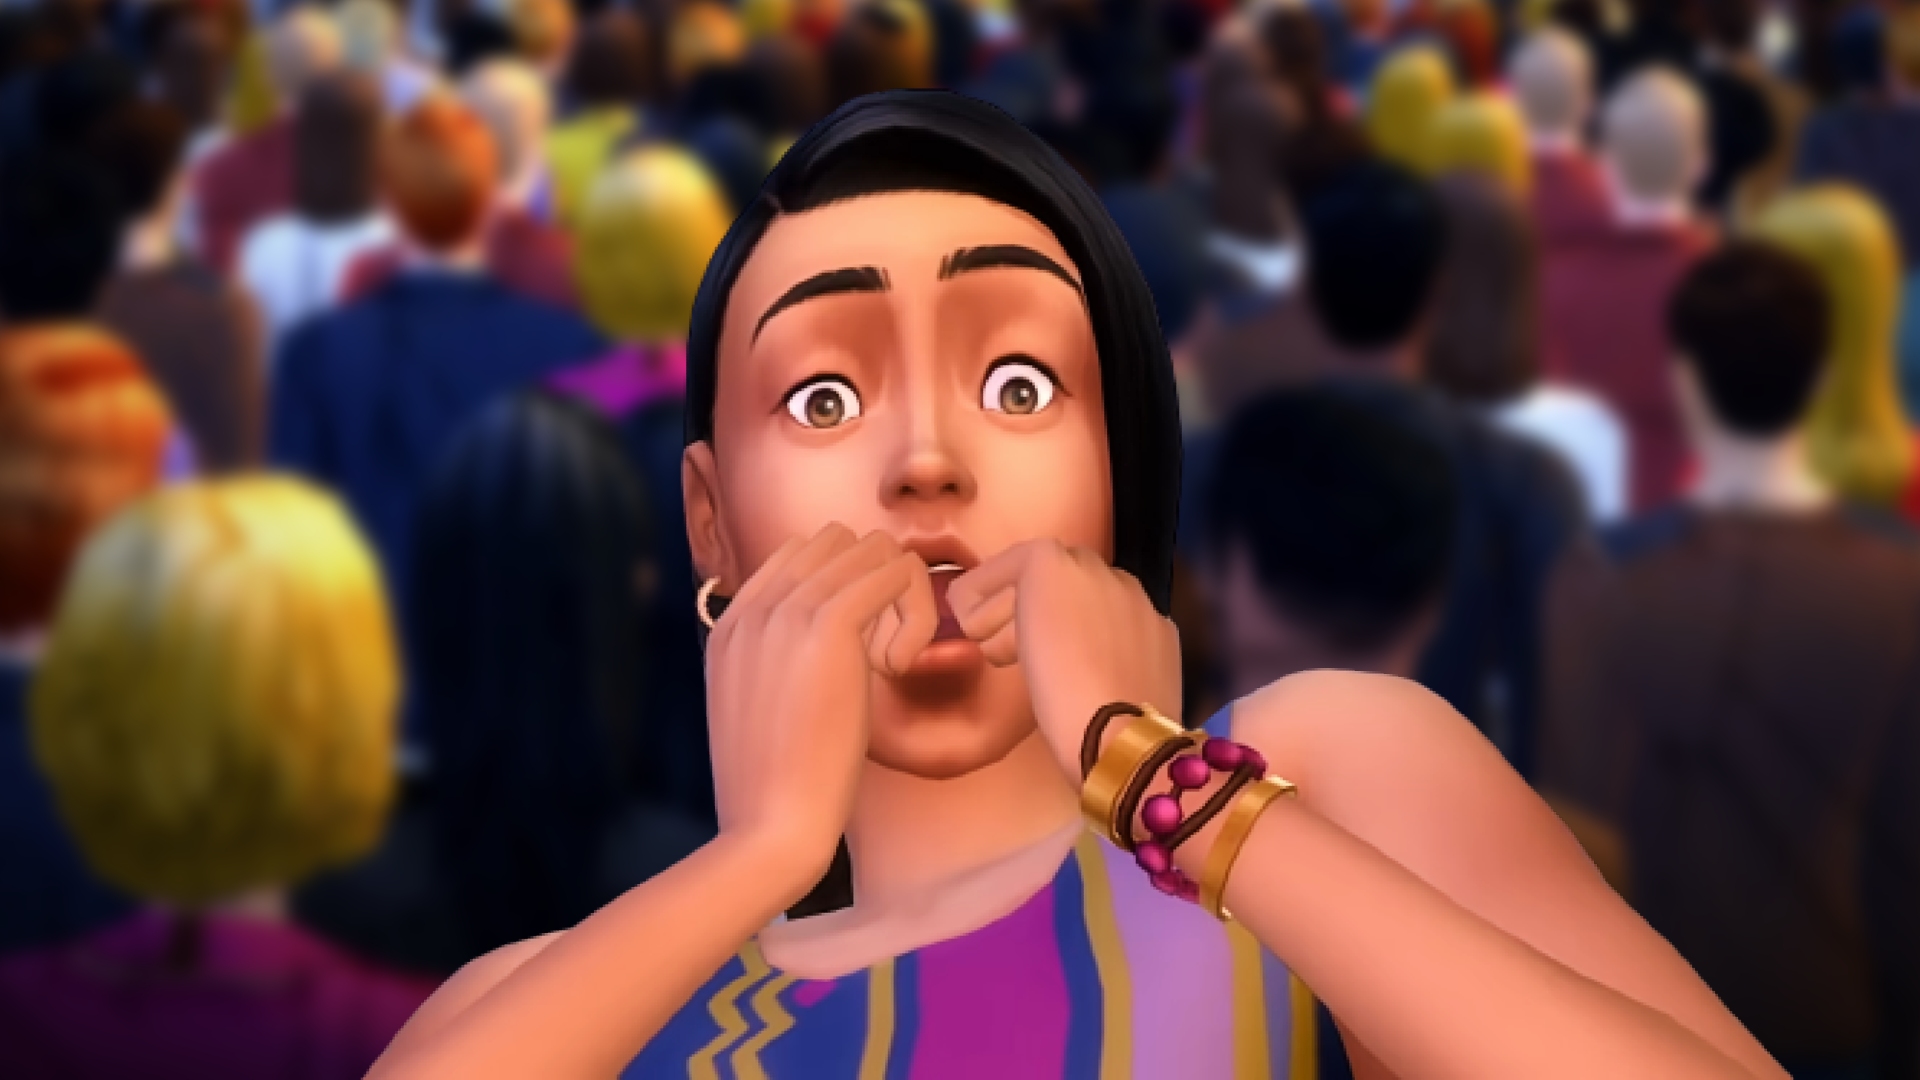 De nieuwe Sims 4-uitbreiding heeft 48 mensen op één stuk grond, en het is een puinhoop